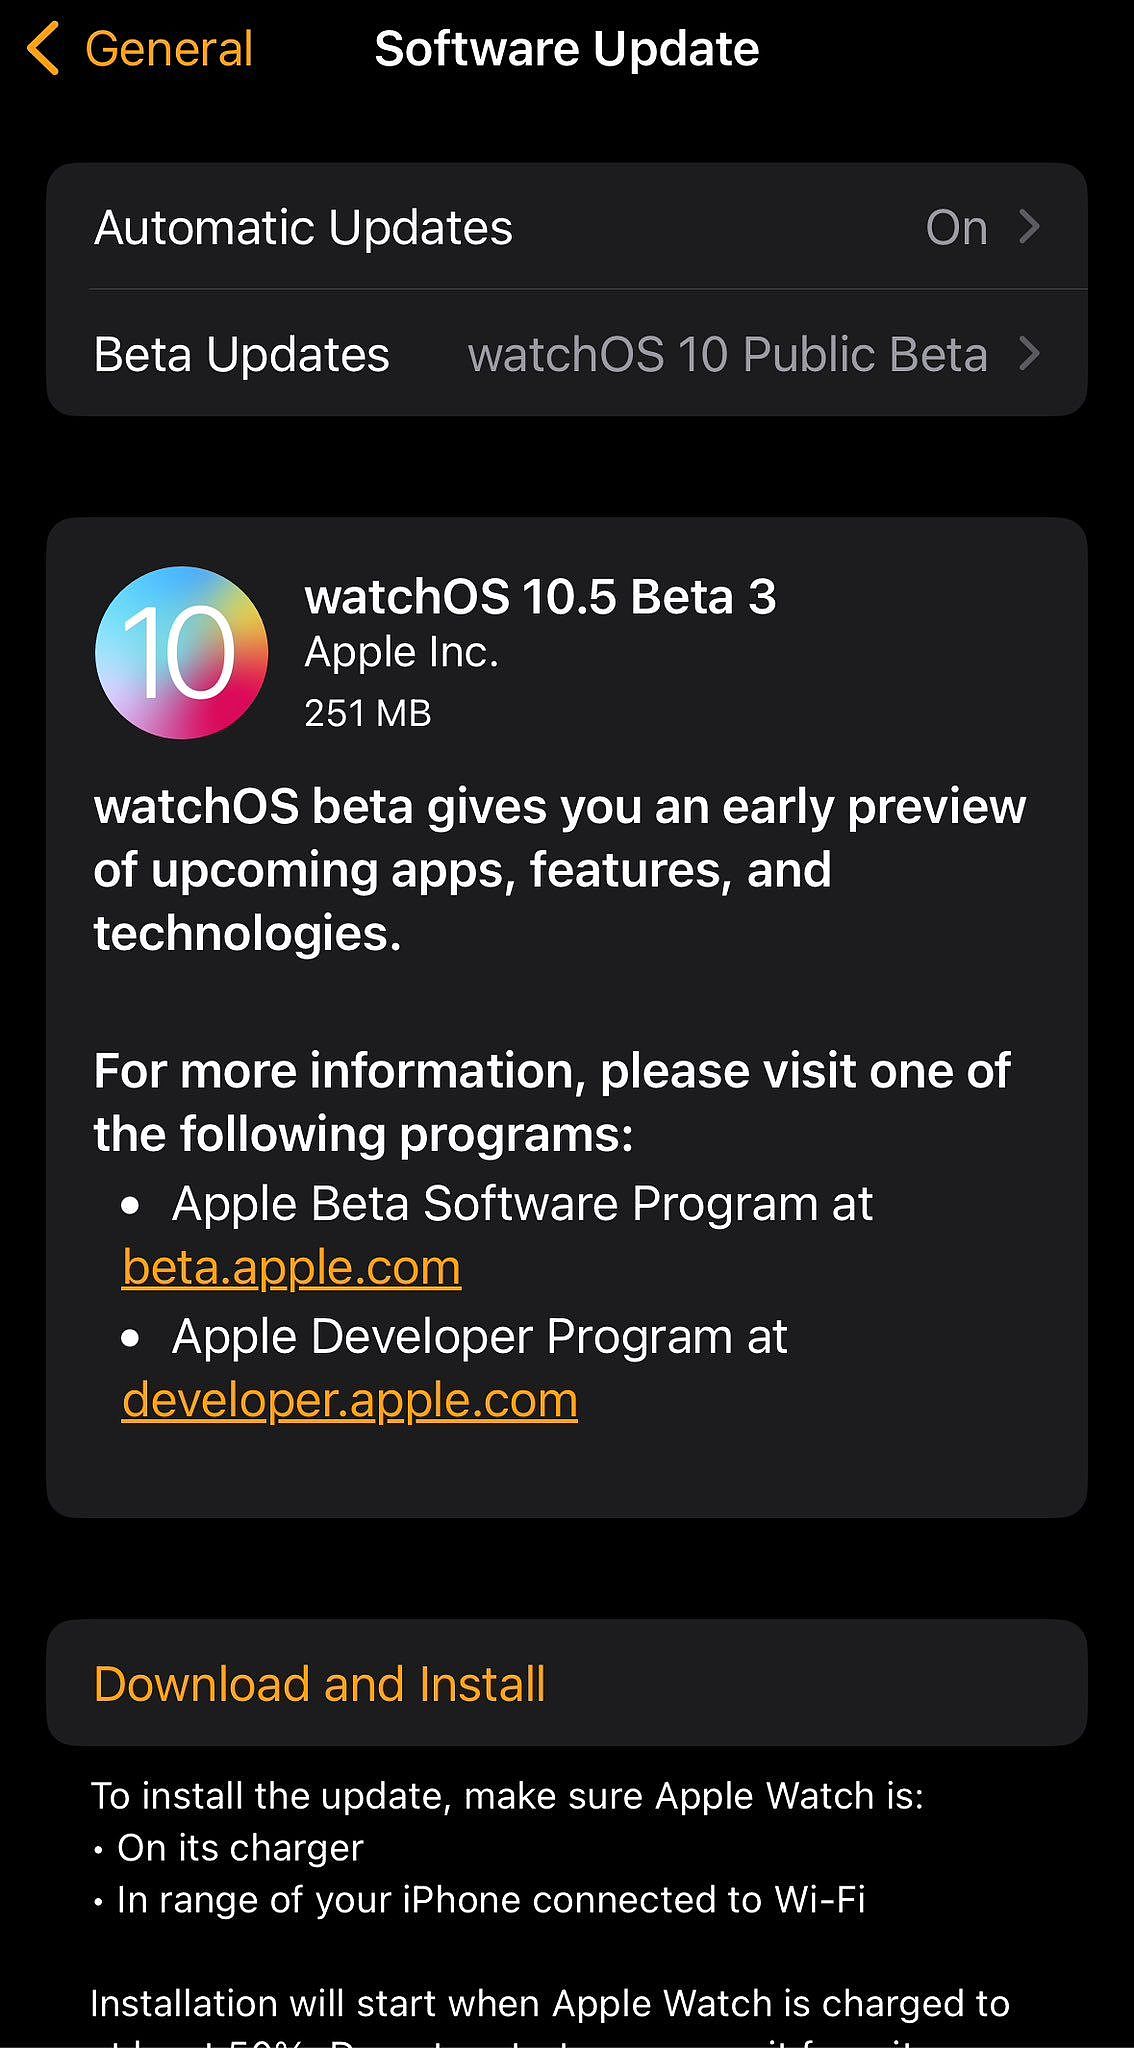 苹果发布 iOS / iPadOS 17.5、macOS 14.5、watchOS 10.5 第 3 个公测版 - 2